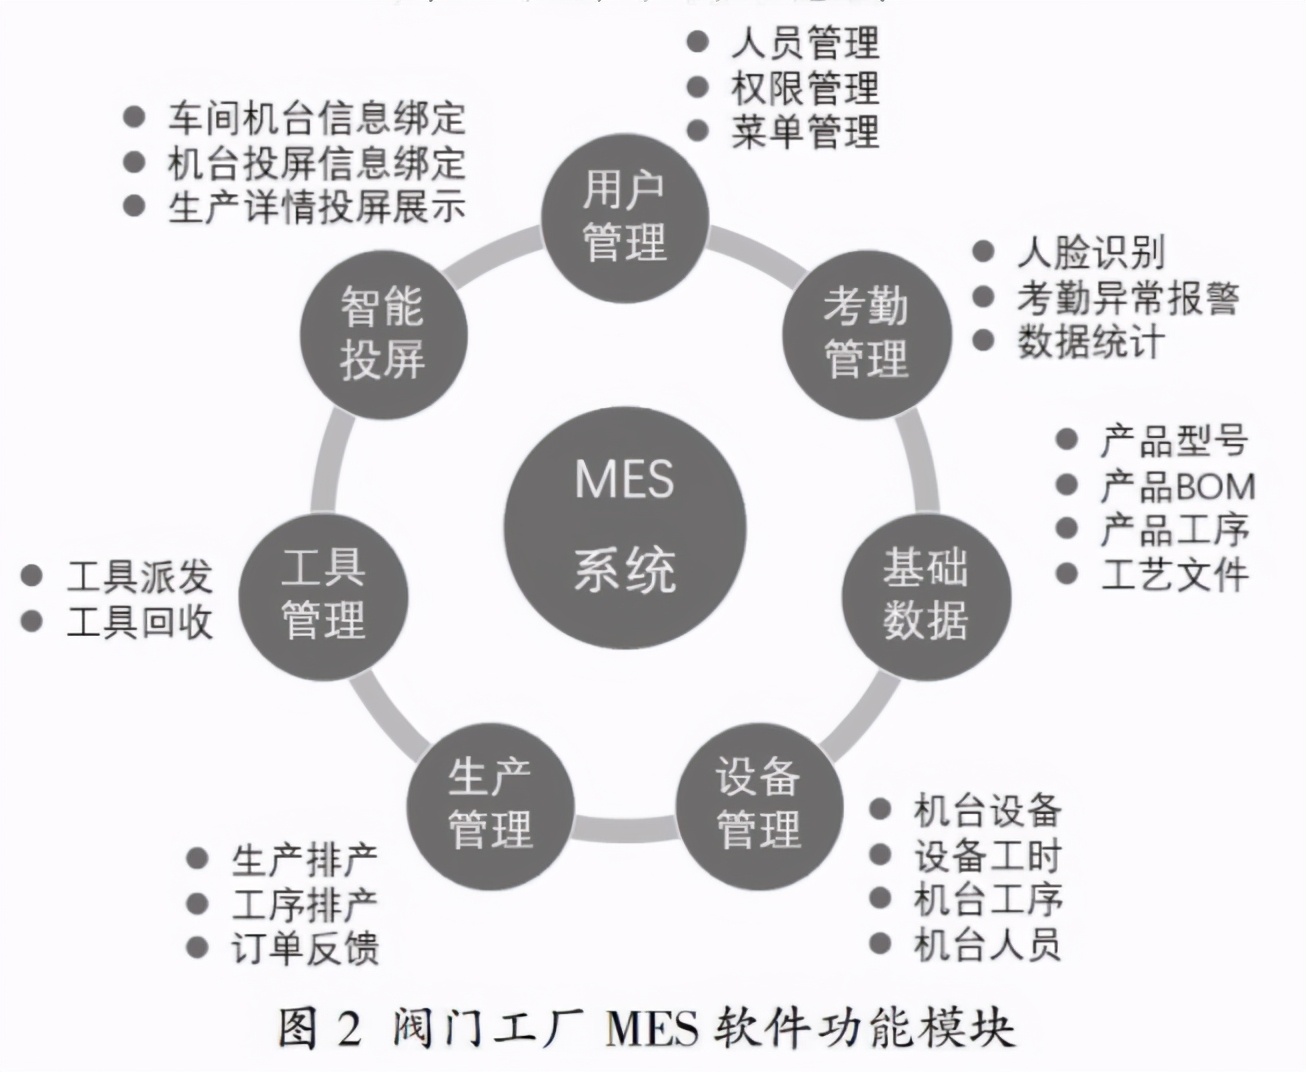 離散型製造業智能車間的製造執行系統MES